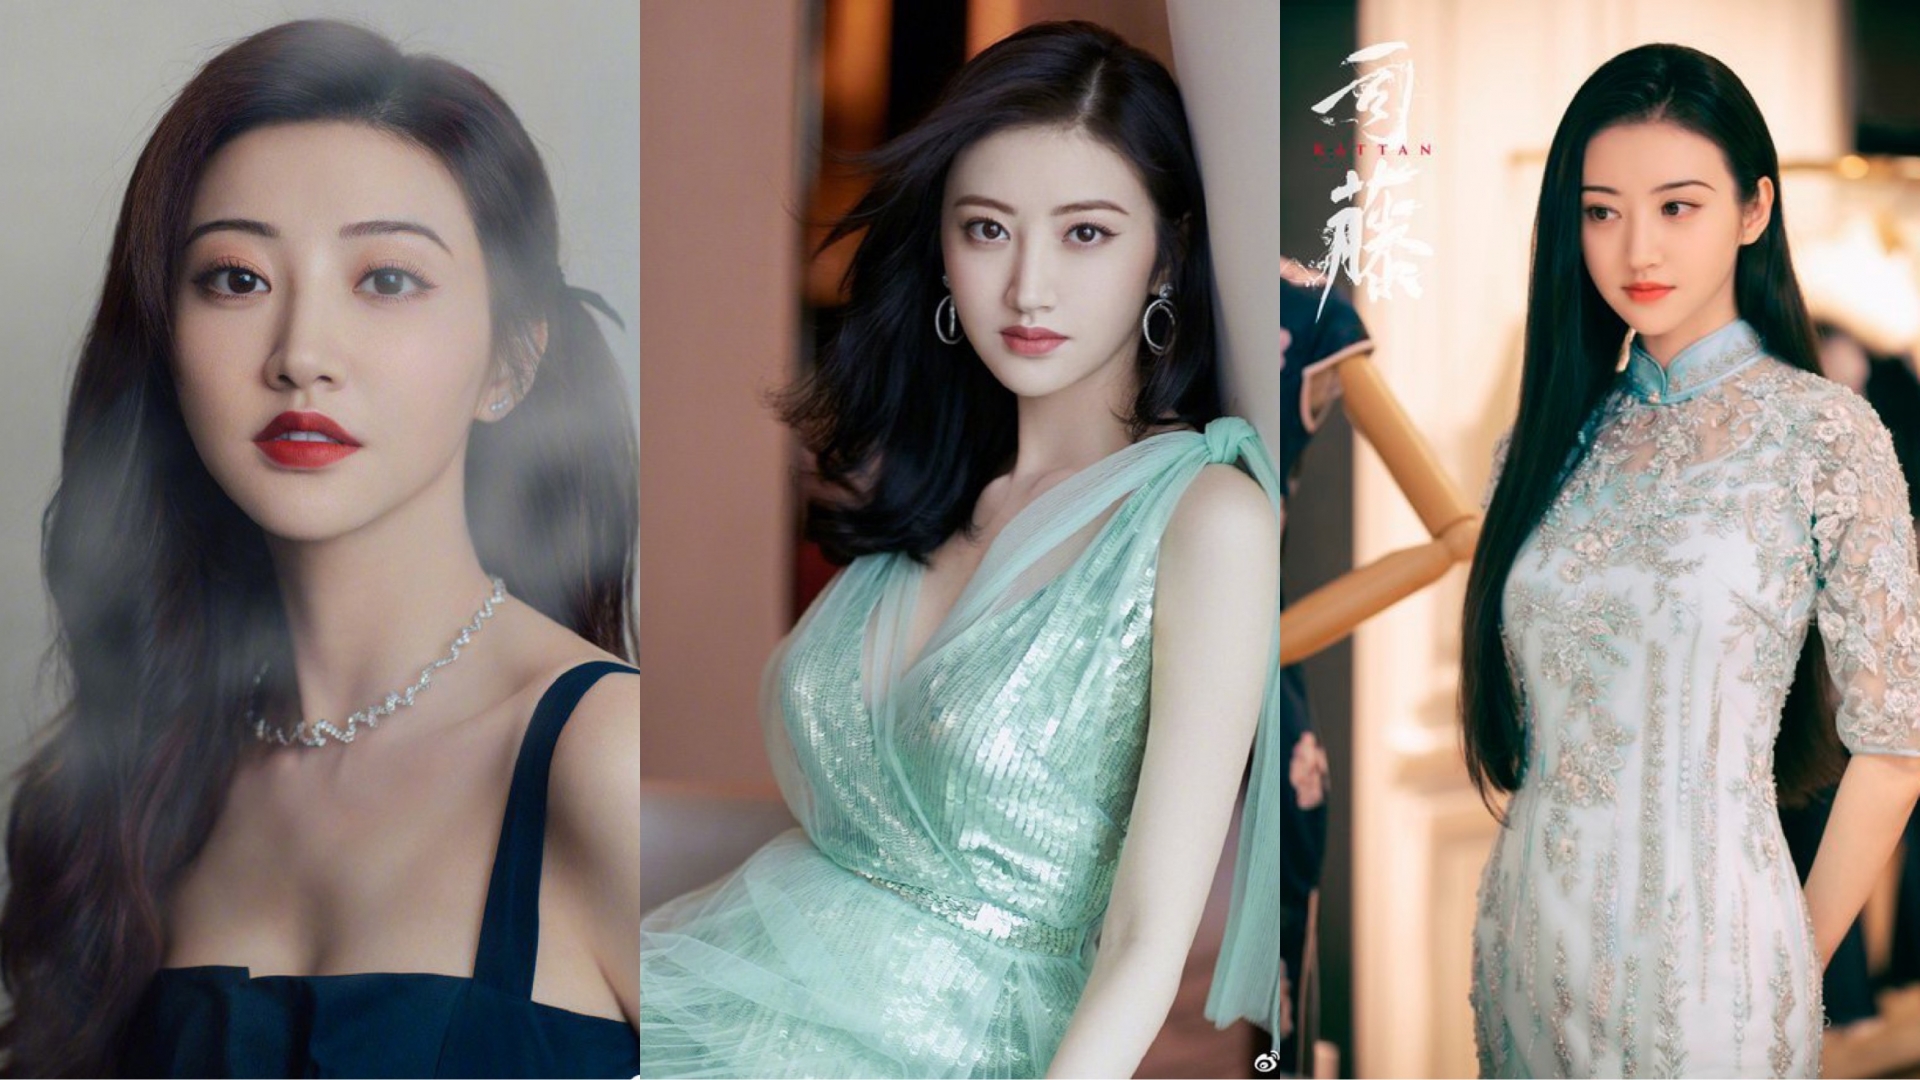 Visual vừa sang chảnh, ngọt ngào lại vừa quyến rũ của Cảnh Điềm giúp cô đứng thứ 6 trong BXH những gương mặt đẹp nhất châu Á.